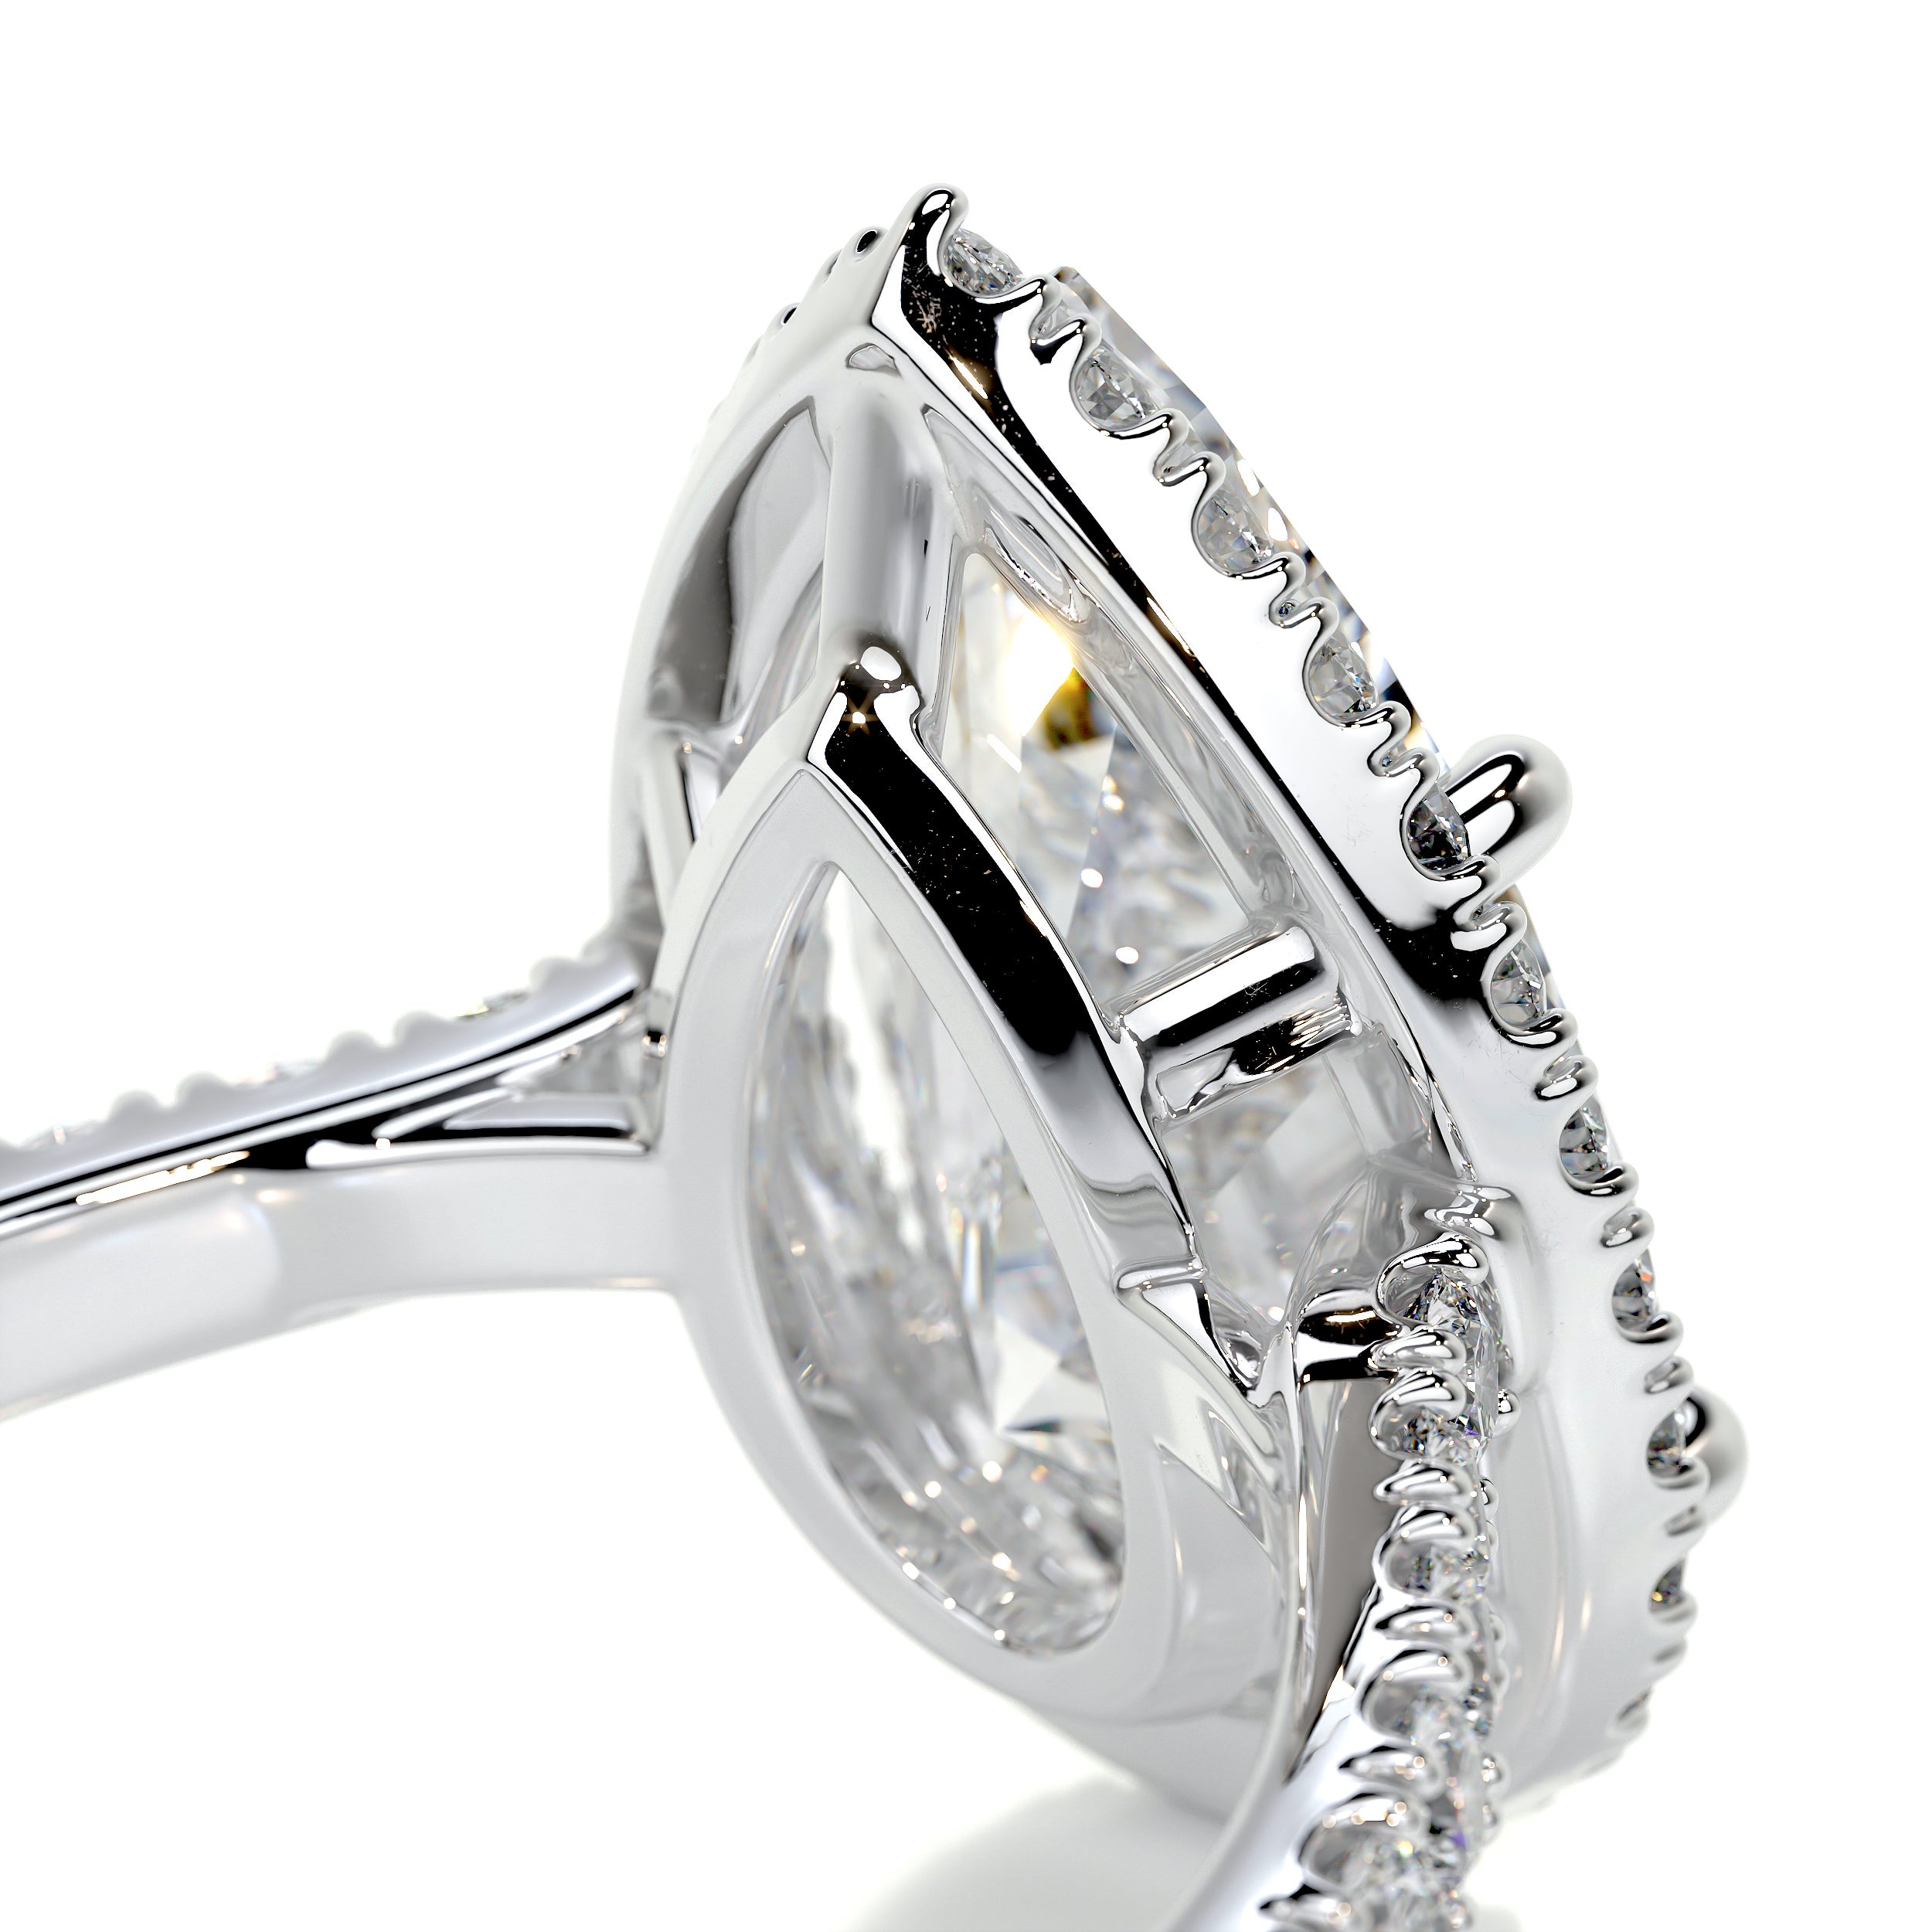 Sophia Diamond Engagement Ring   (3 Carat) -Platinum